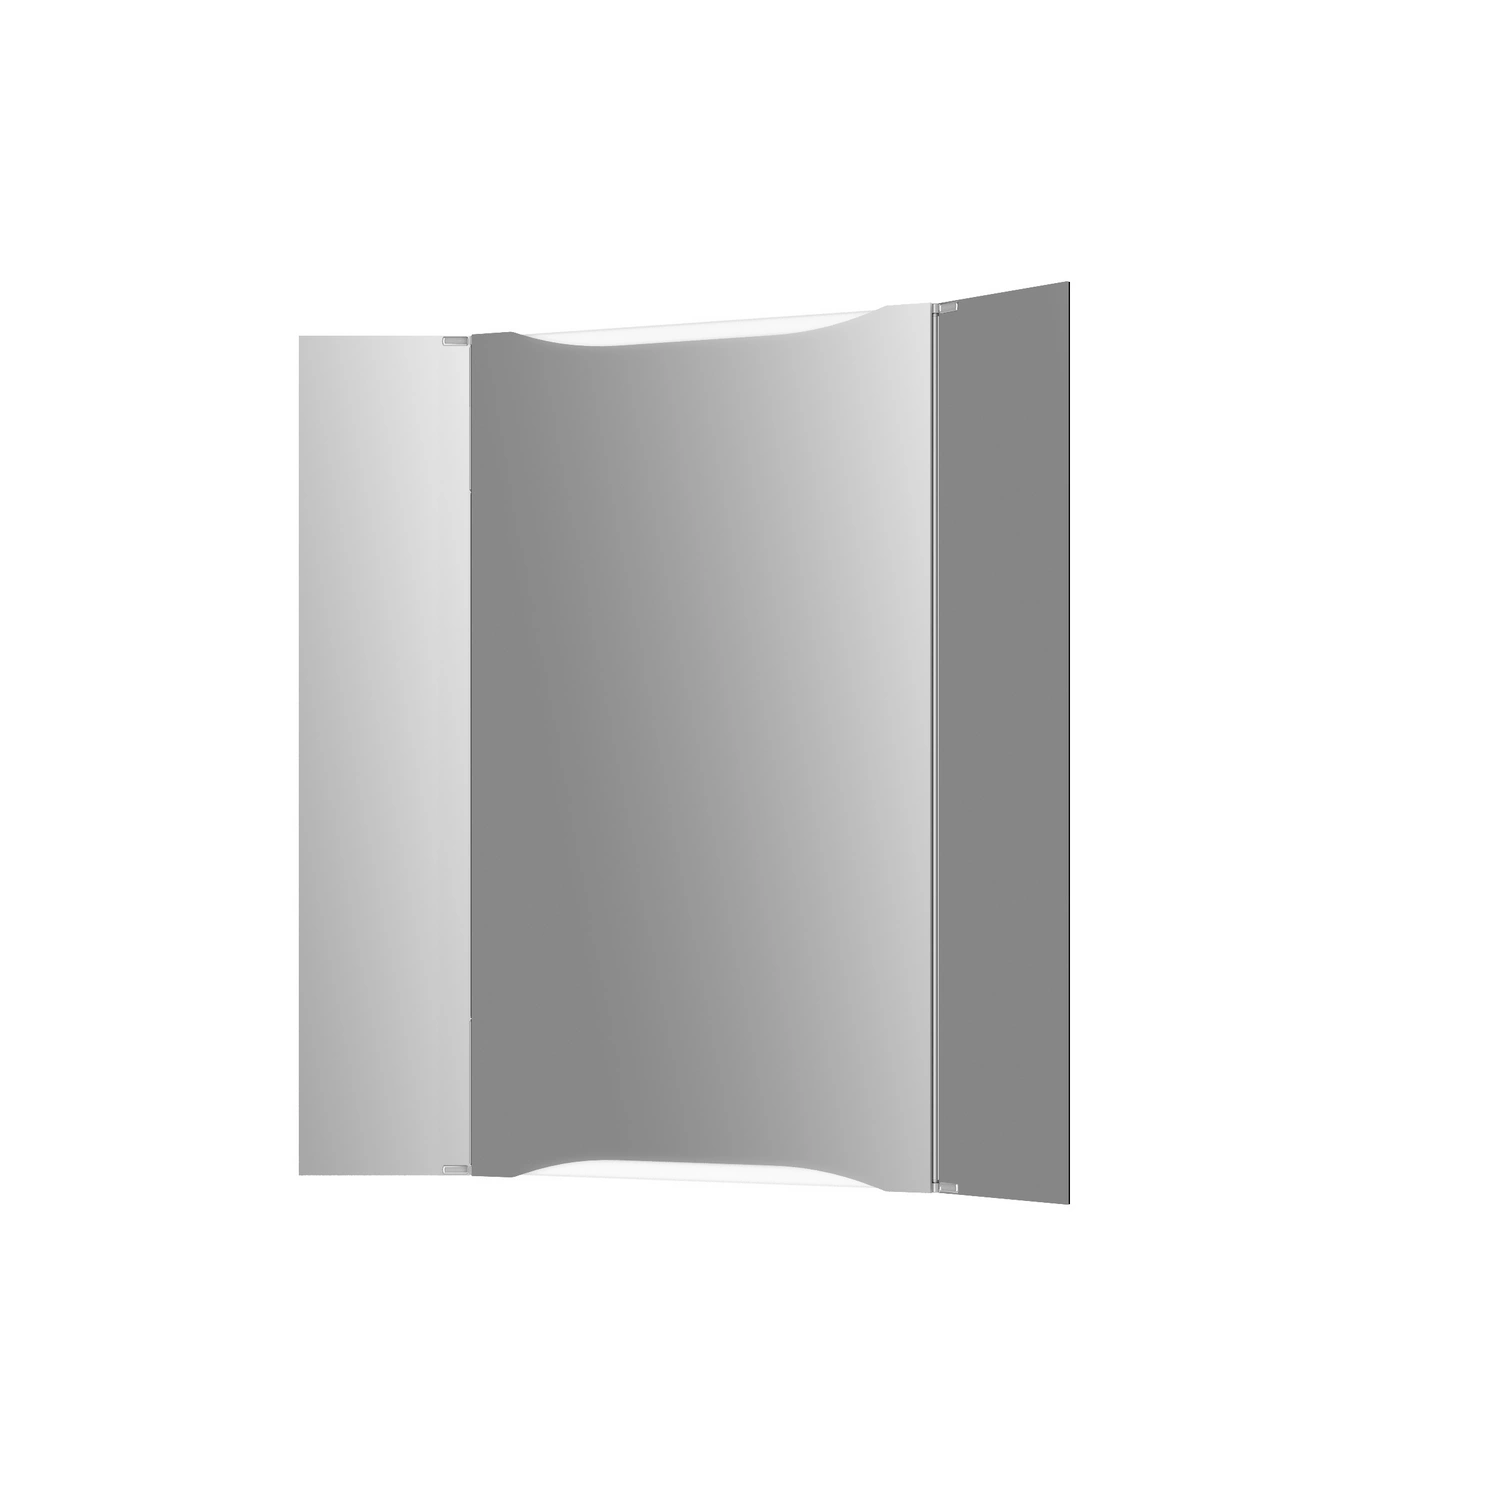 JOKEY Spiegelschrank, BxHxT: 44,6 x 73,5 x 16,8 cm, transparent/weiß